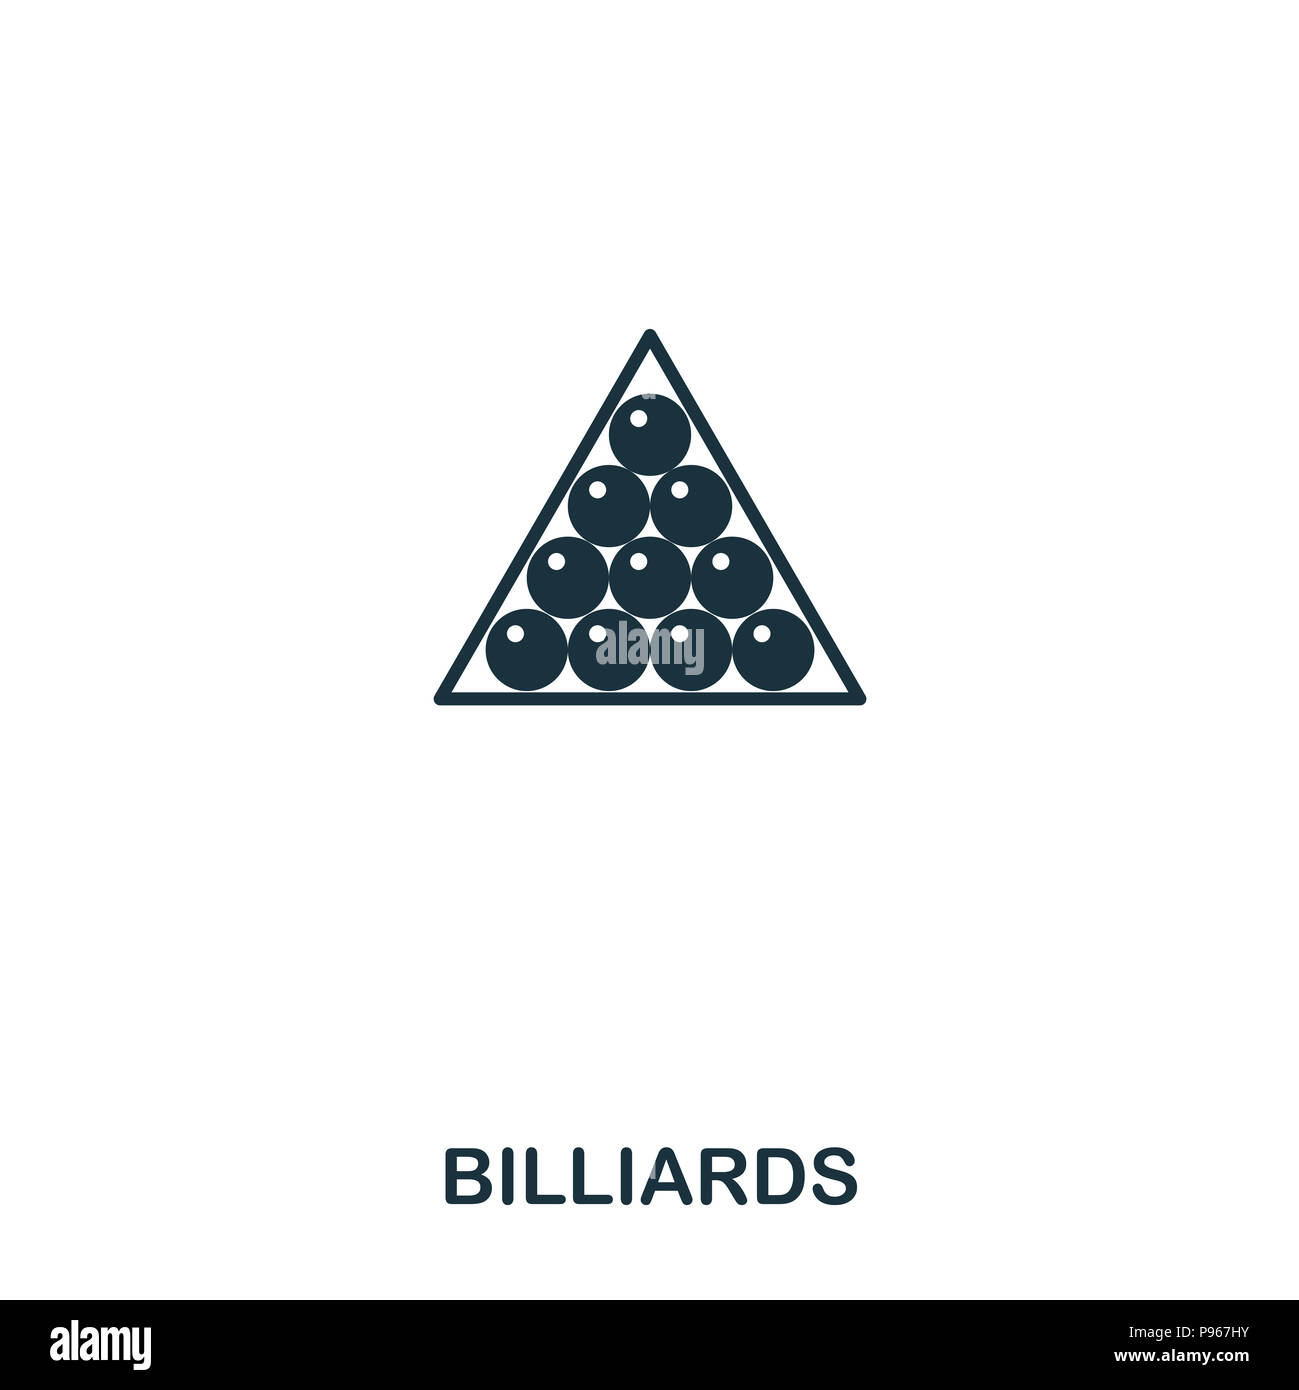 Billiards icon Banque de photographies et d'images à haute résolution -  Alamy